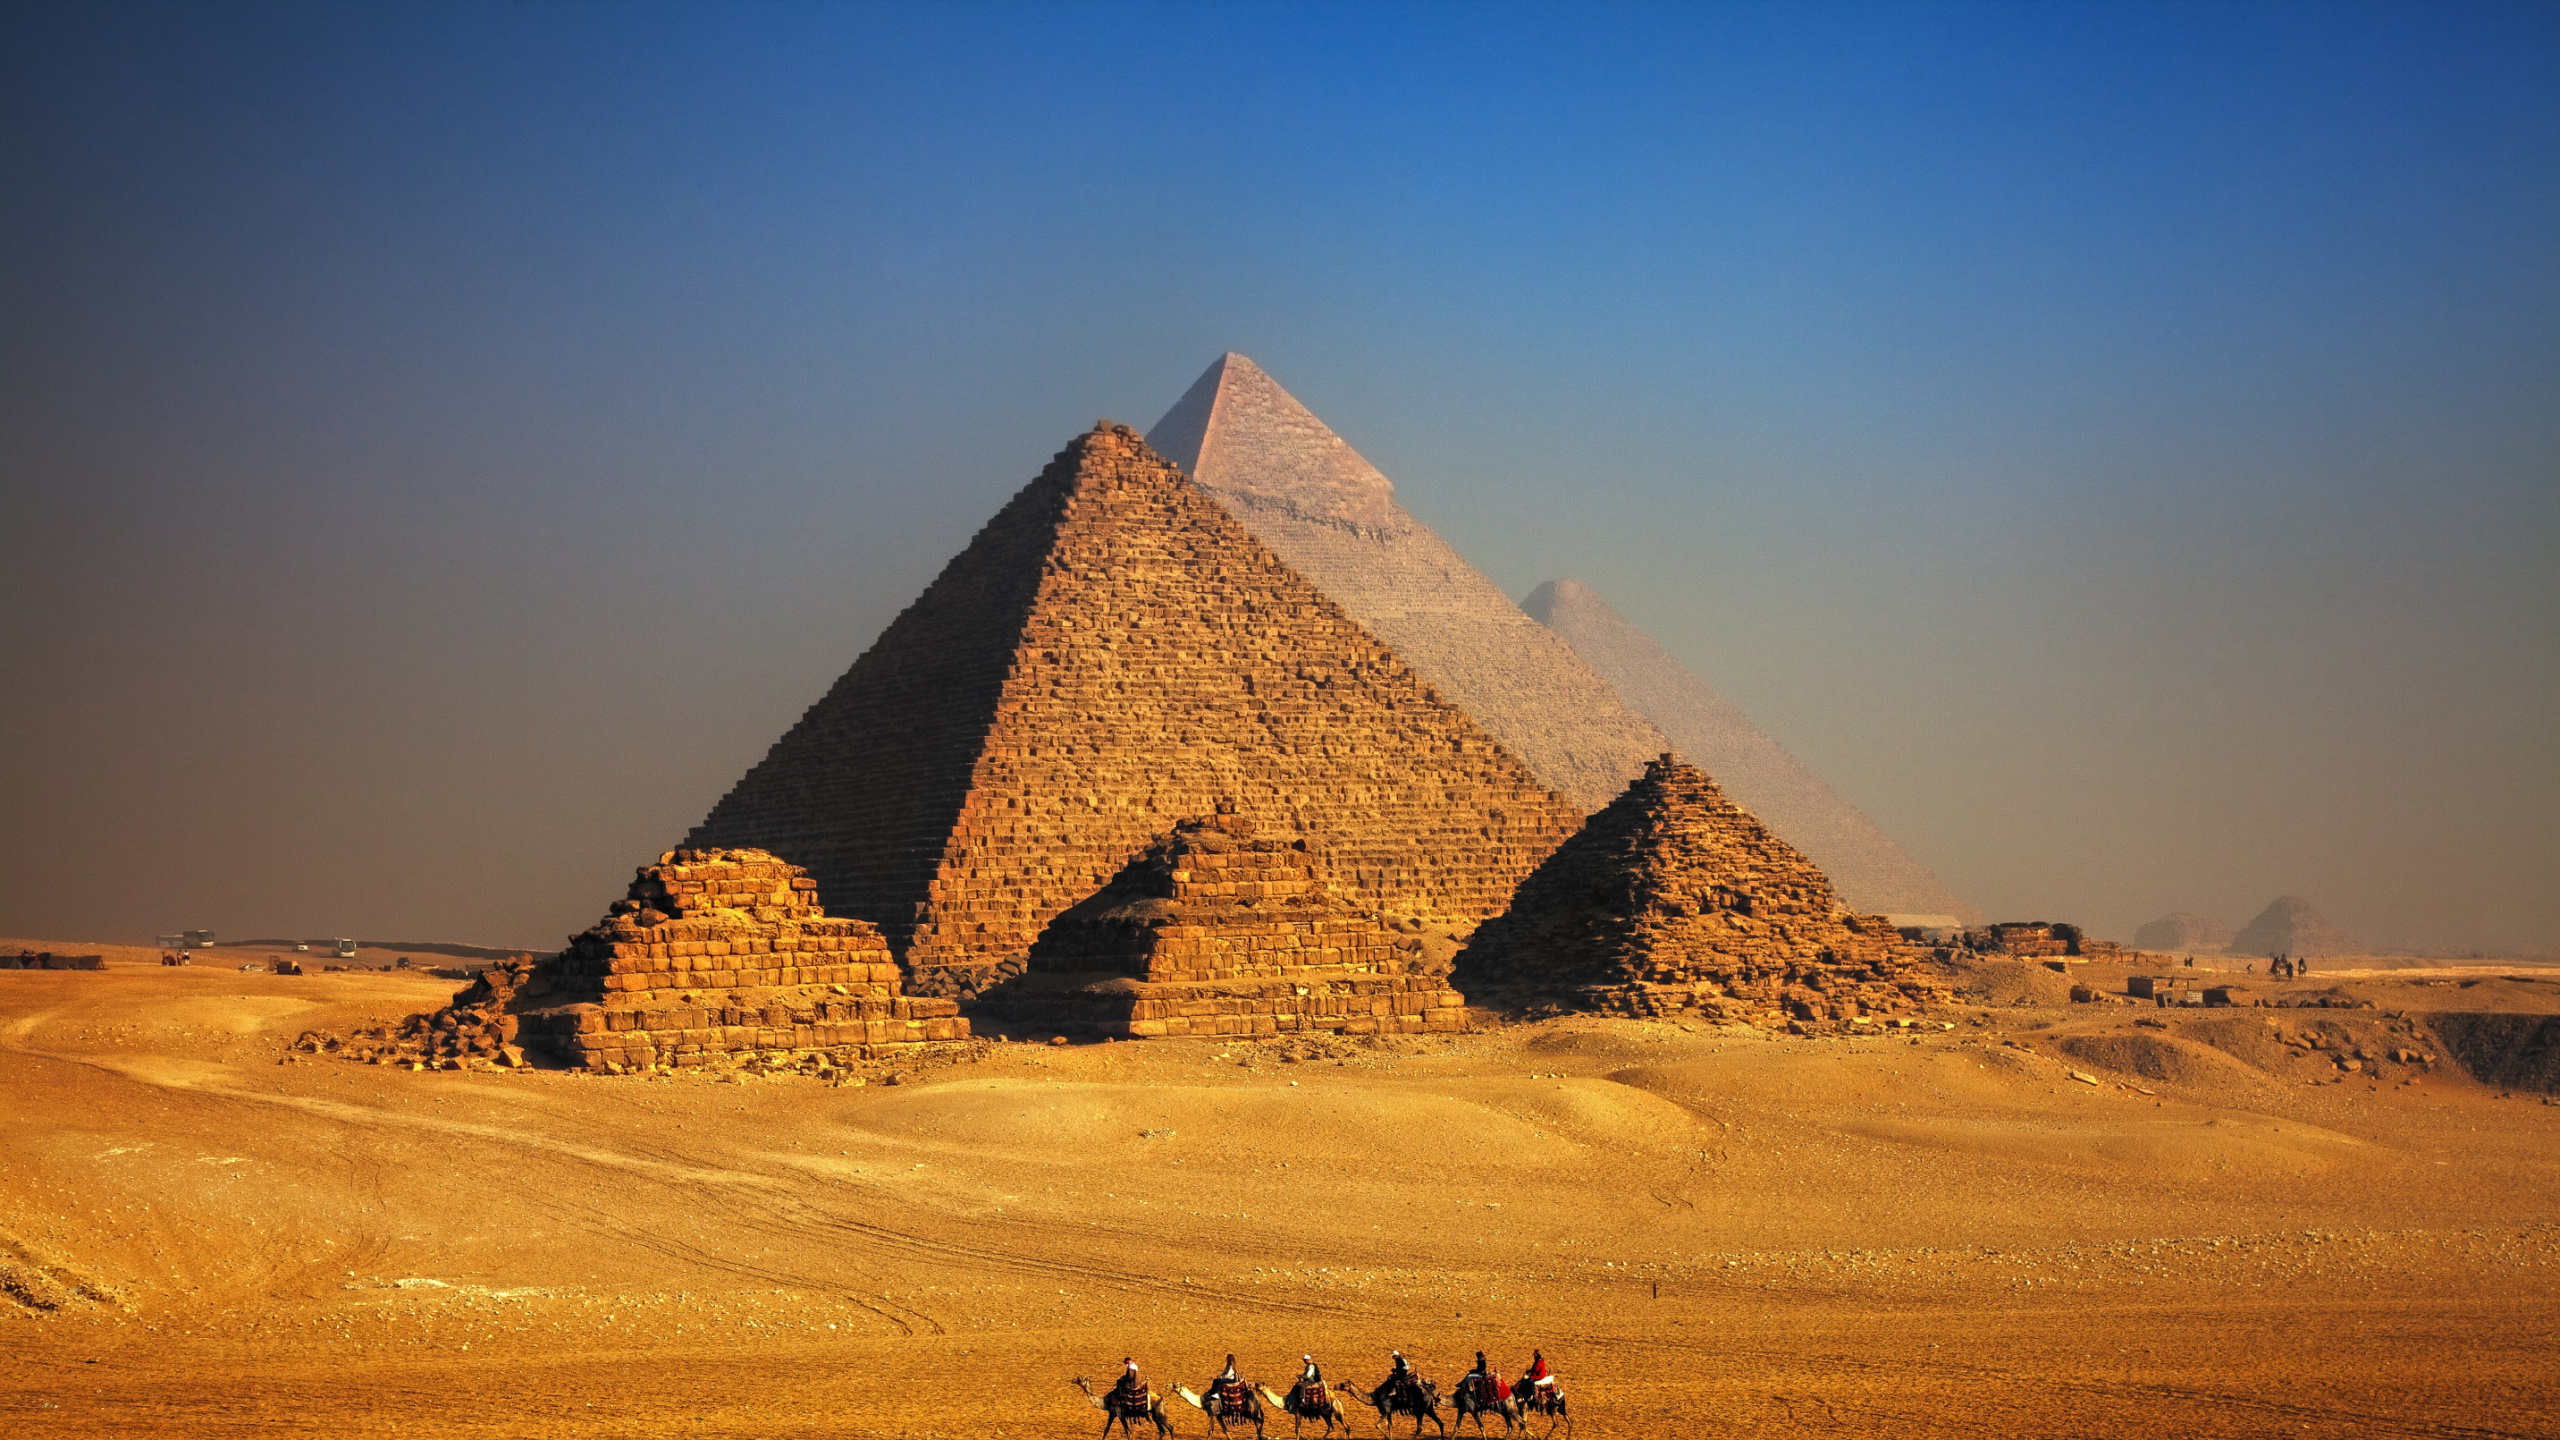 Braune Pyramide in Der Wüste Tagsüber. Wallpaper in 2560x1440 Resolution